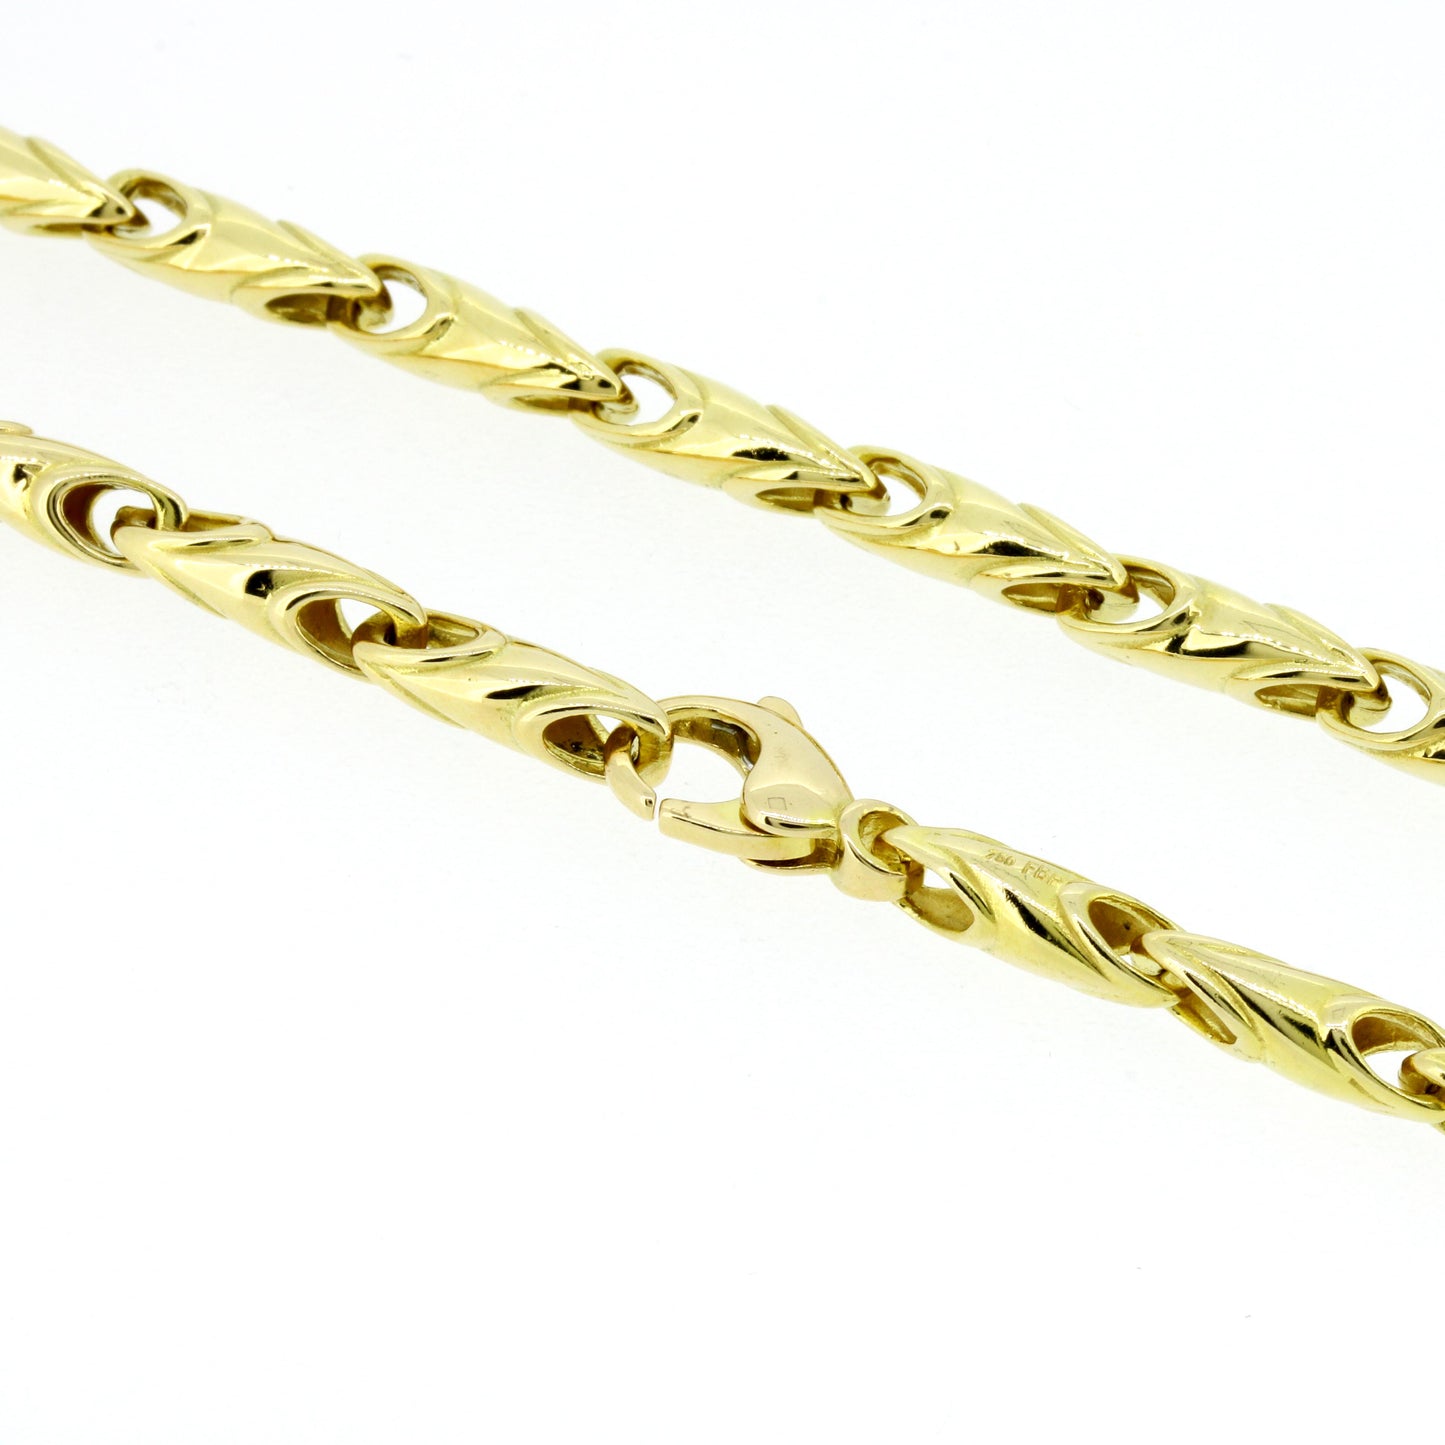 Halskette 750 Gold Kette 18 Kt 51 cm lang Wert 5870,-